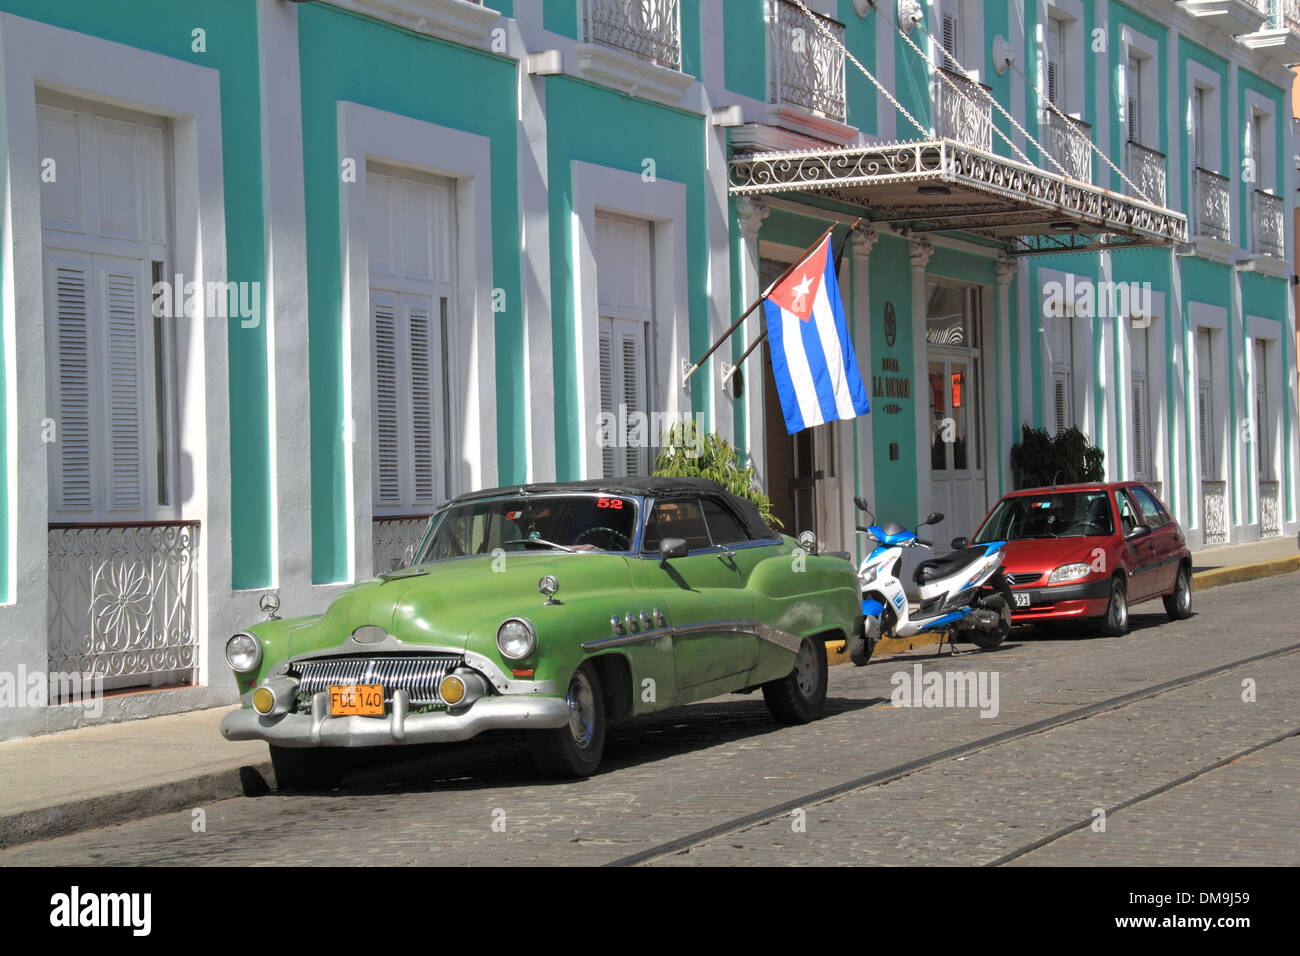 1952 Buick Roadmaster outside Hotel La Unión, Calle 31, Cienfuegos, Cienfuegos province, Cuba, Caribbean Sea, Central America Stock Photo